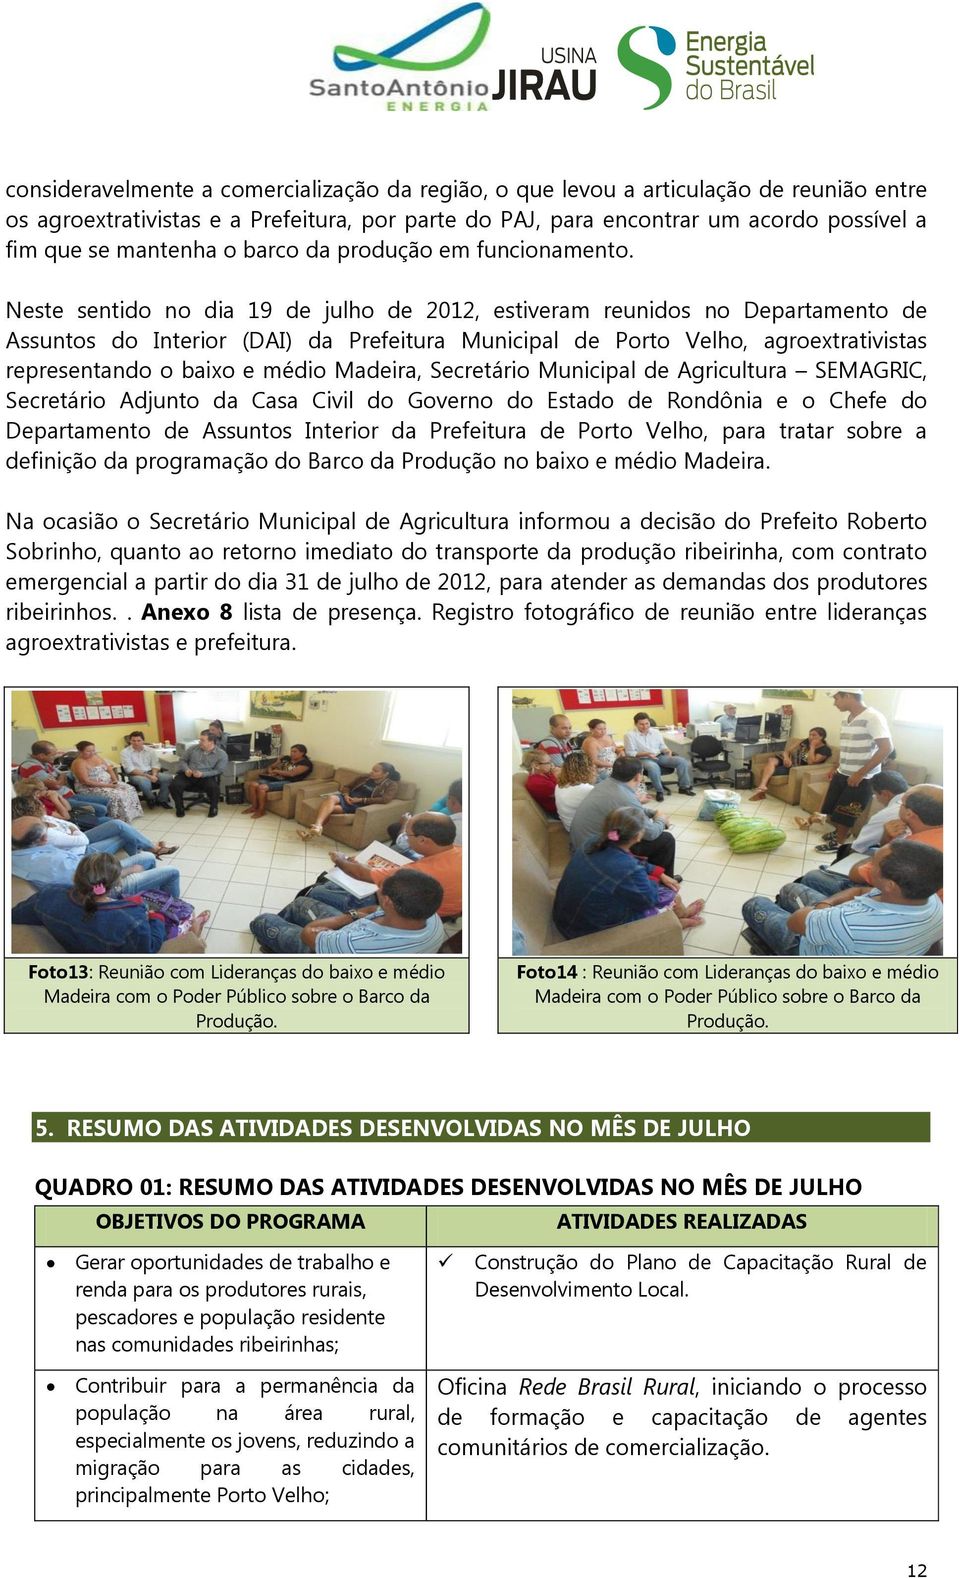 Neste sentido no dia 19 de julho de 2012, estiveram reunidos no Departamento de Assuntos do Interior (DAI) da Prefeitura Municipal de Porto Velho, agroextrativistas representando o baixo e médio